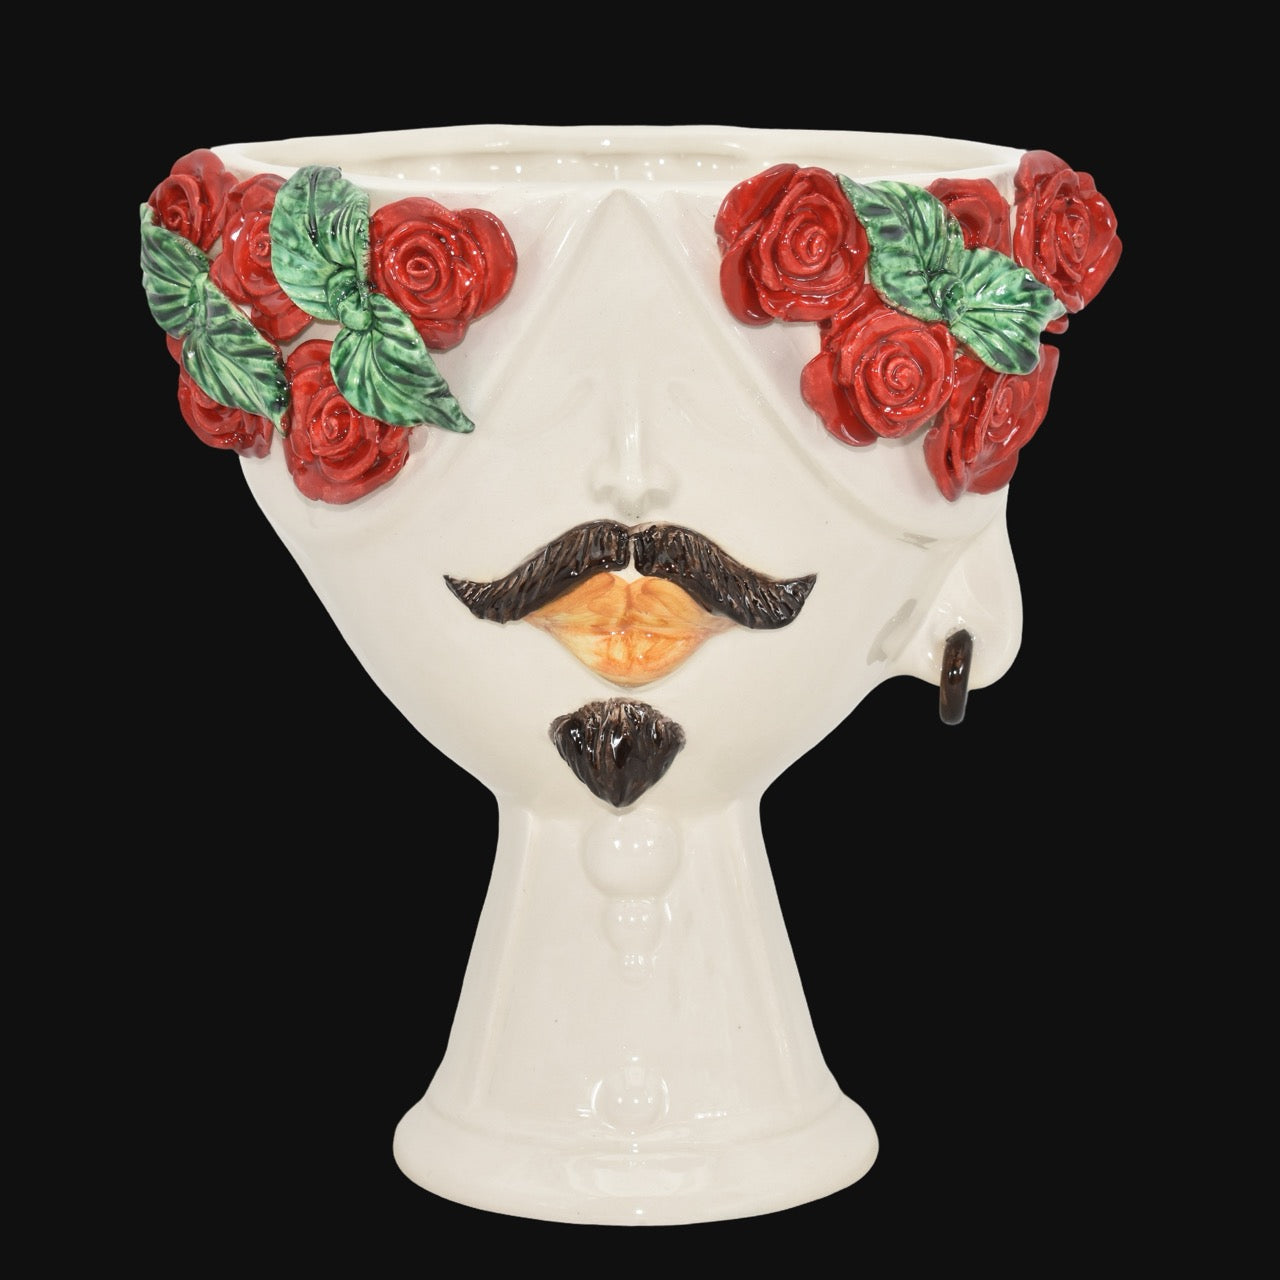 Testa di Moro con rose rosse "Zahira" uomo | White and Color 30 cm